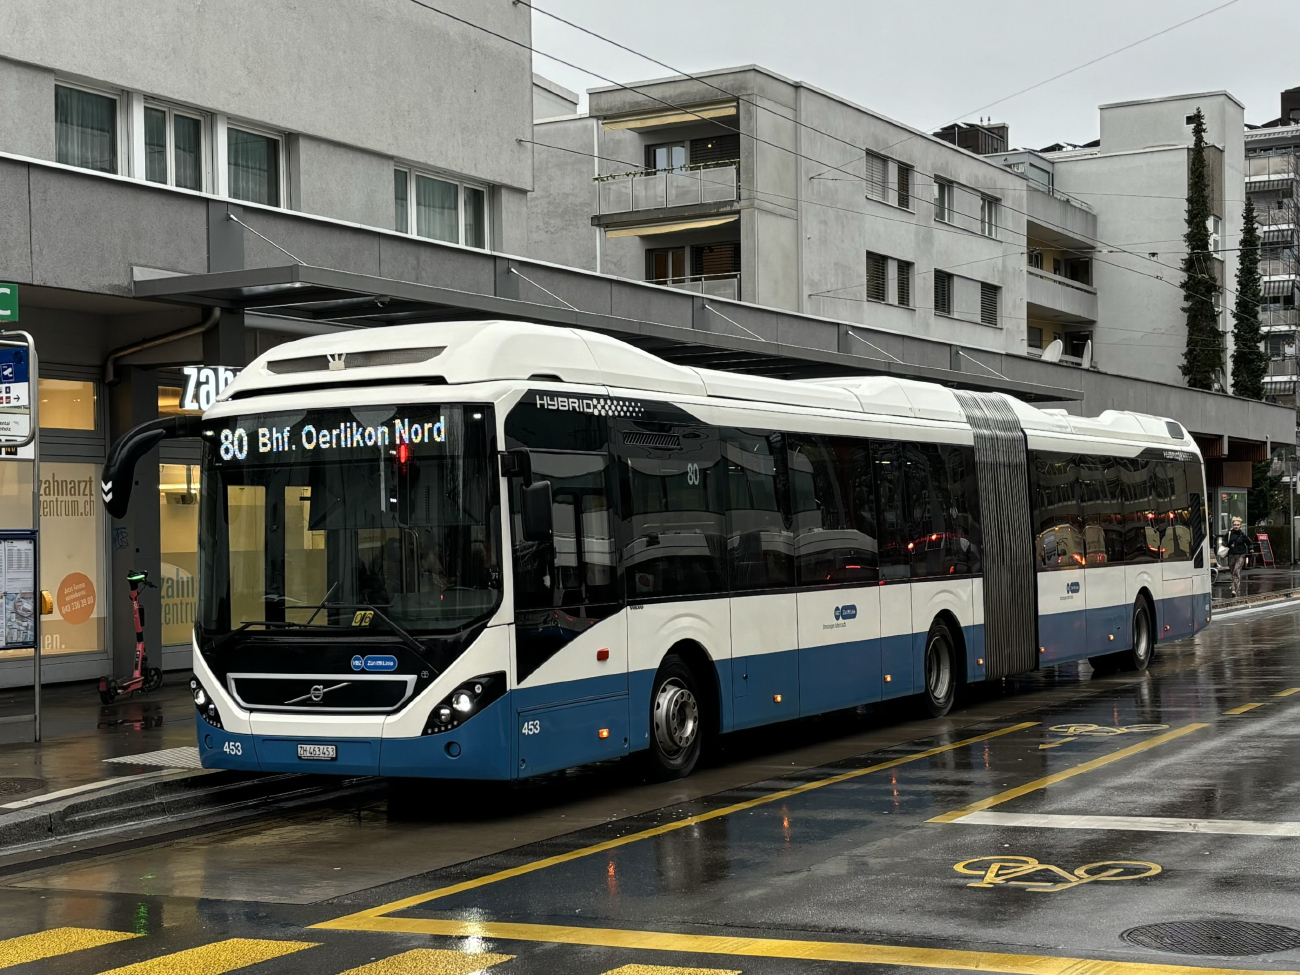 Zurigo, Volvo 7900A Hybrid # 453